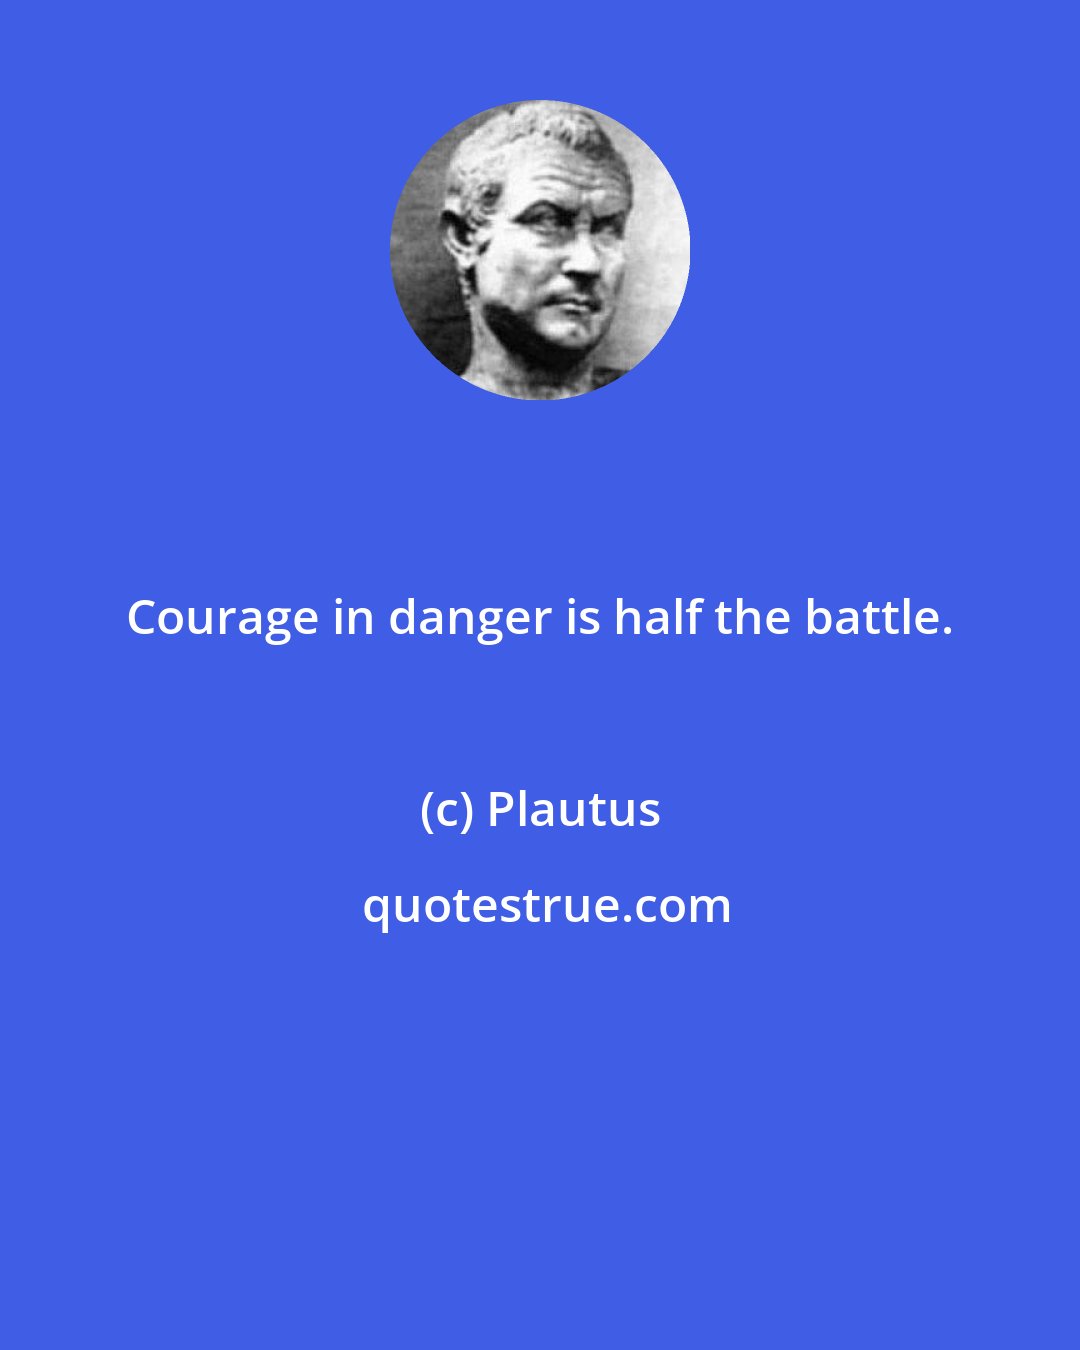 Plautus: Courage in danger is half the battle.